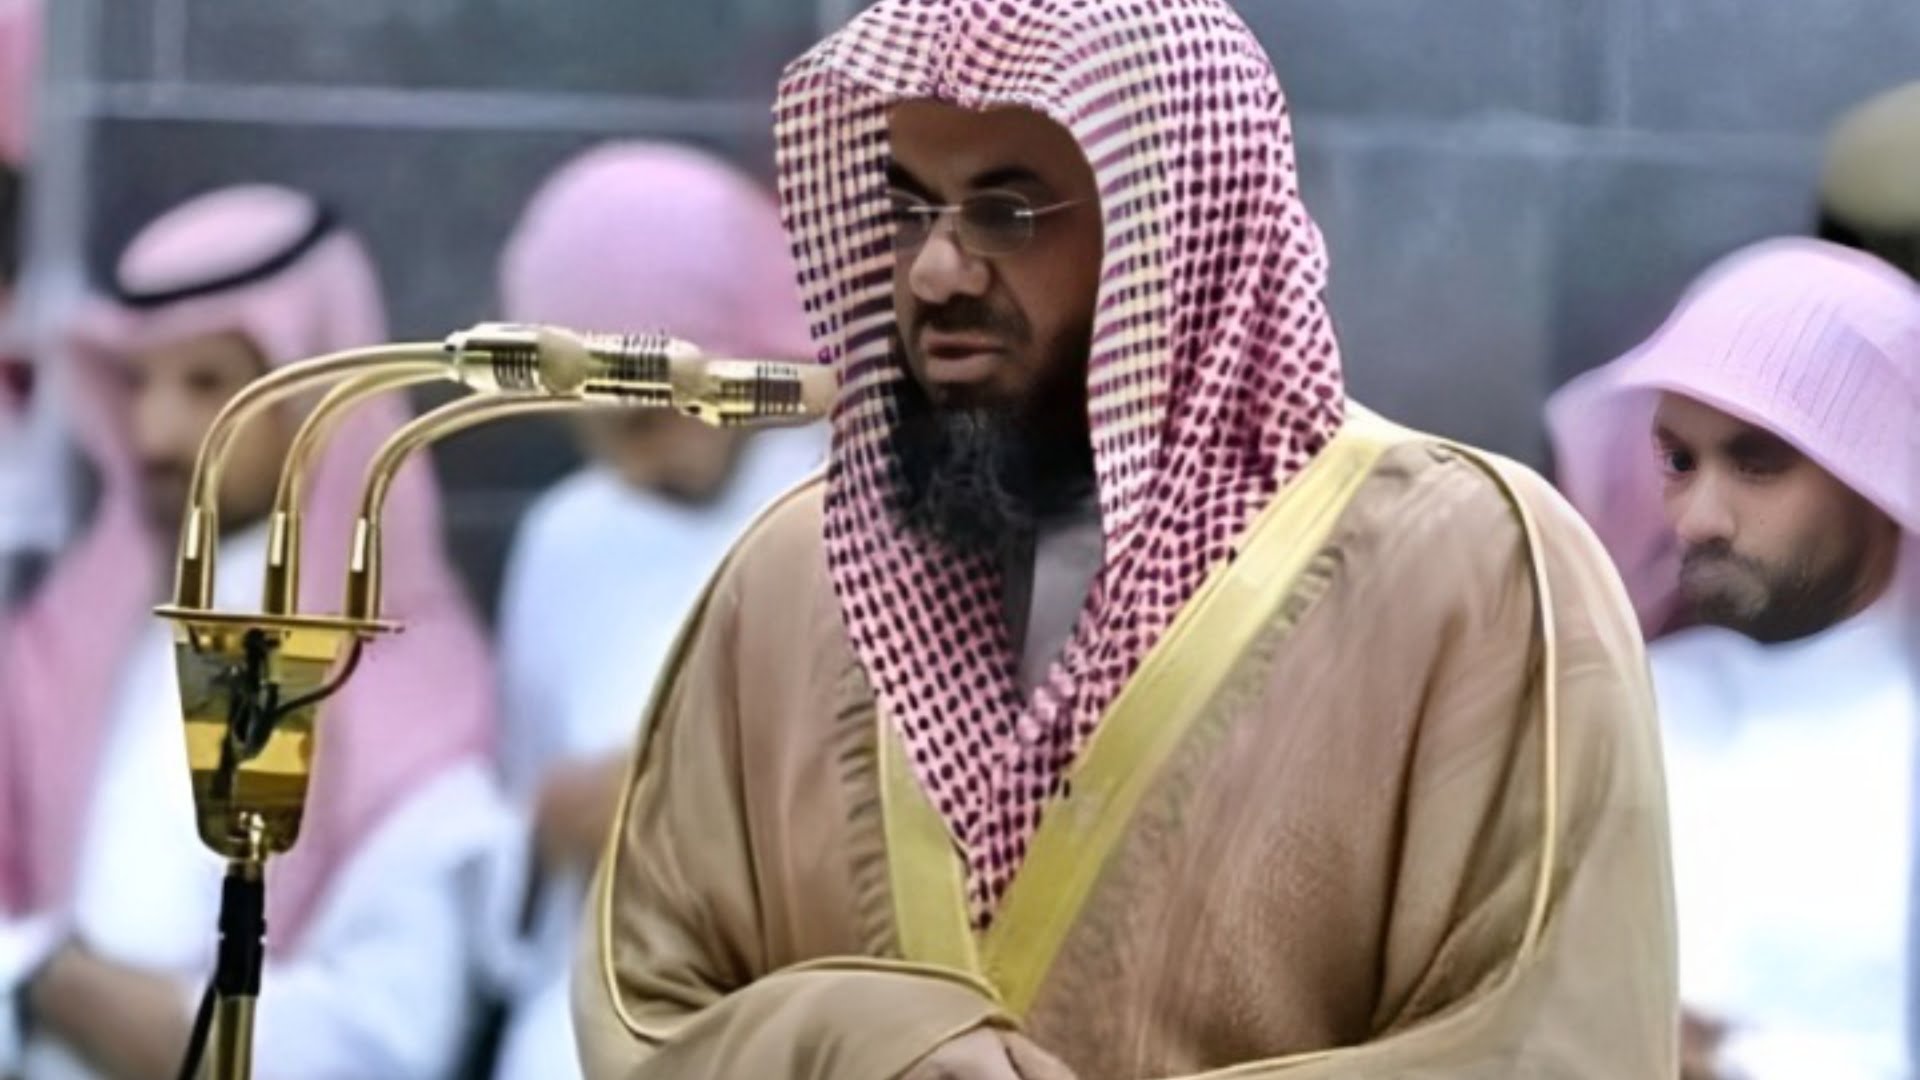 Sheikh Saud Al Shuraim